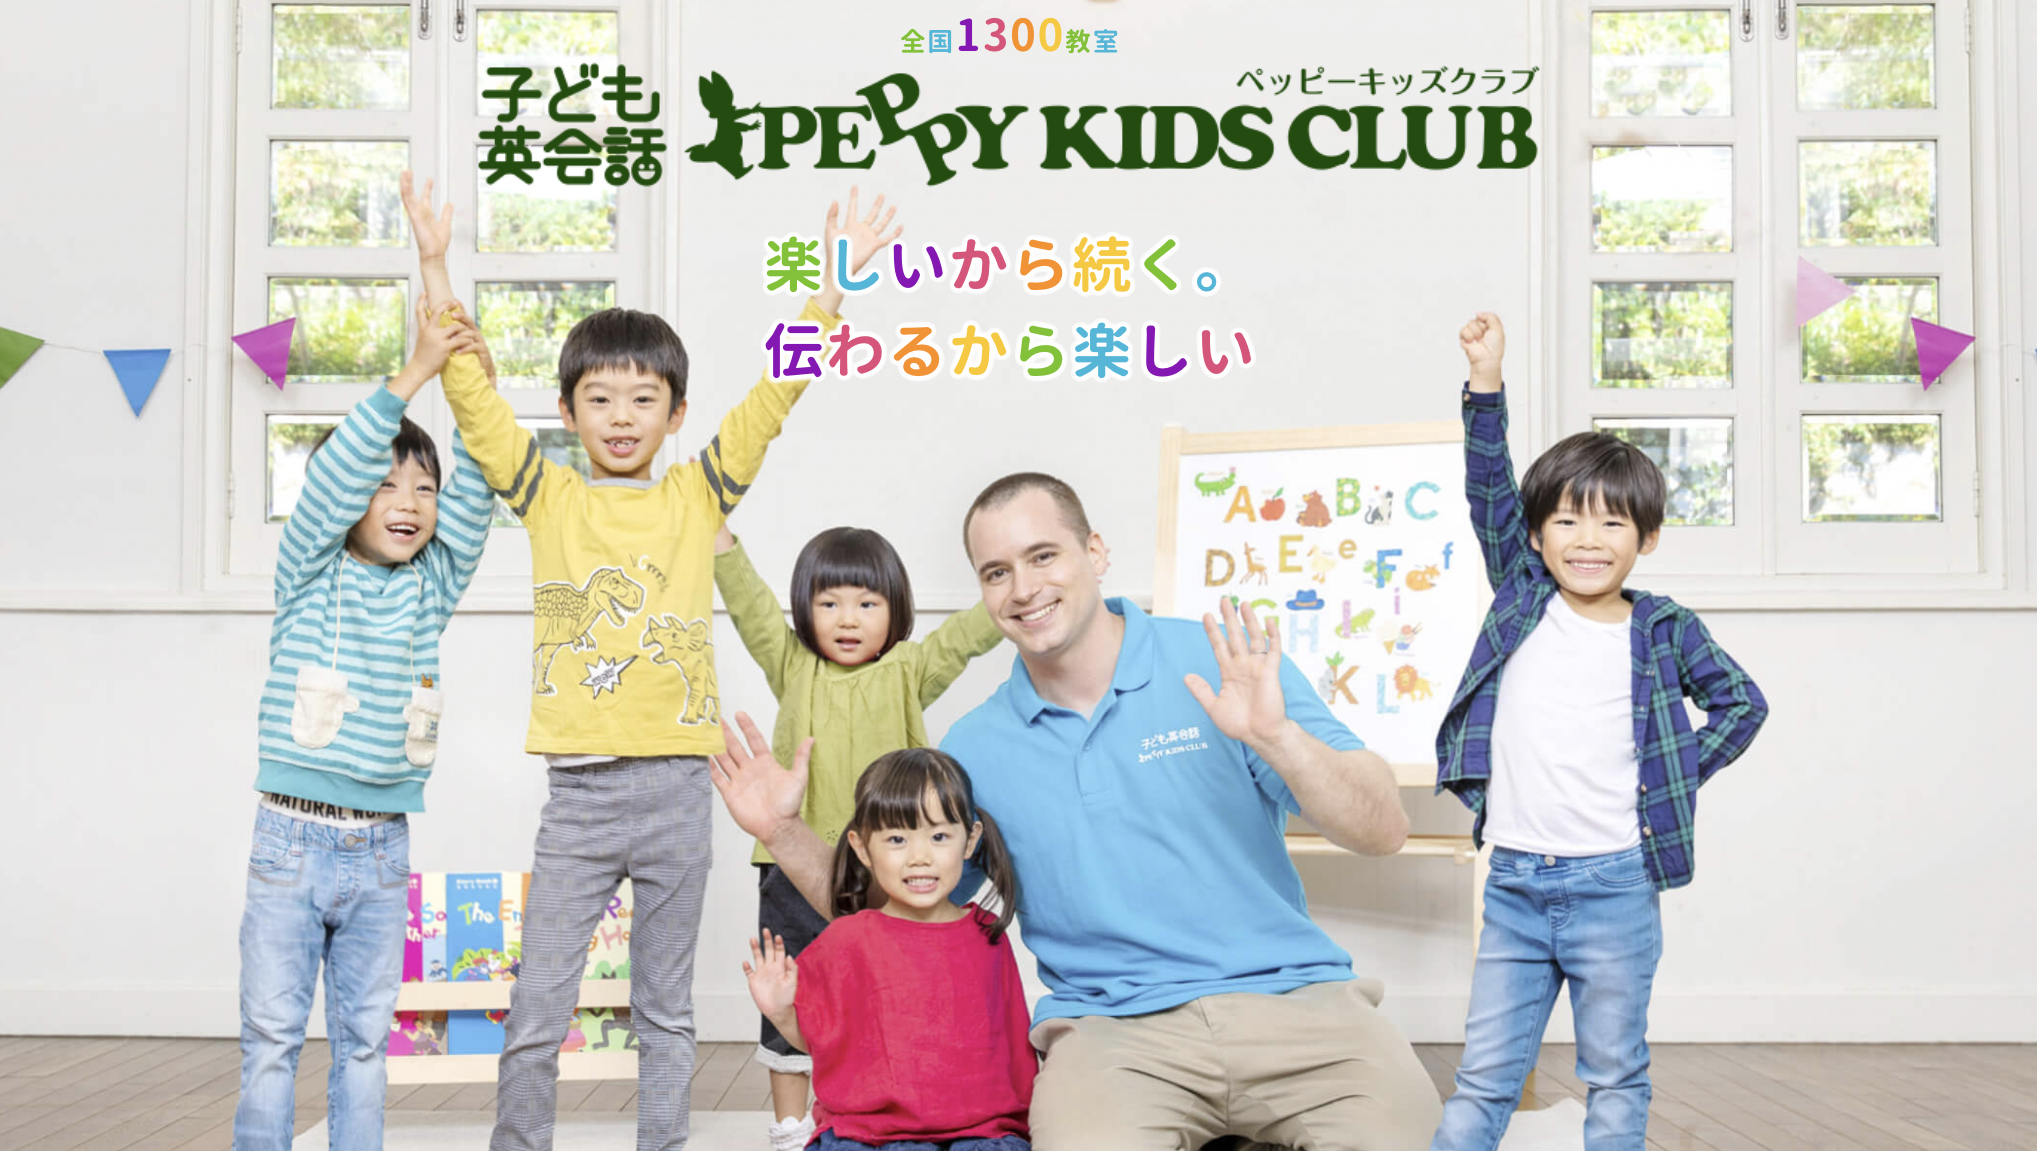 ペッピーキッズクラブ PEPPY KIDS CLUB 英語 絵本